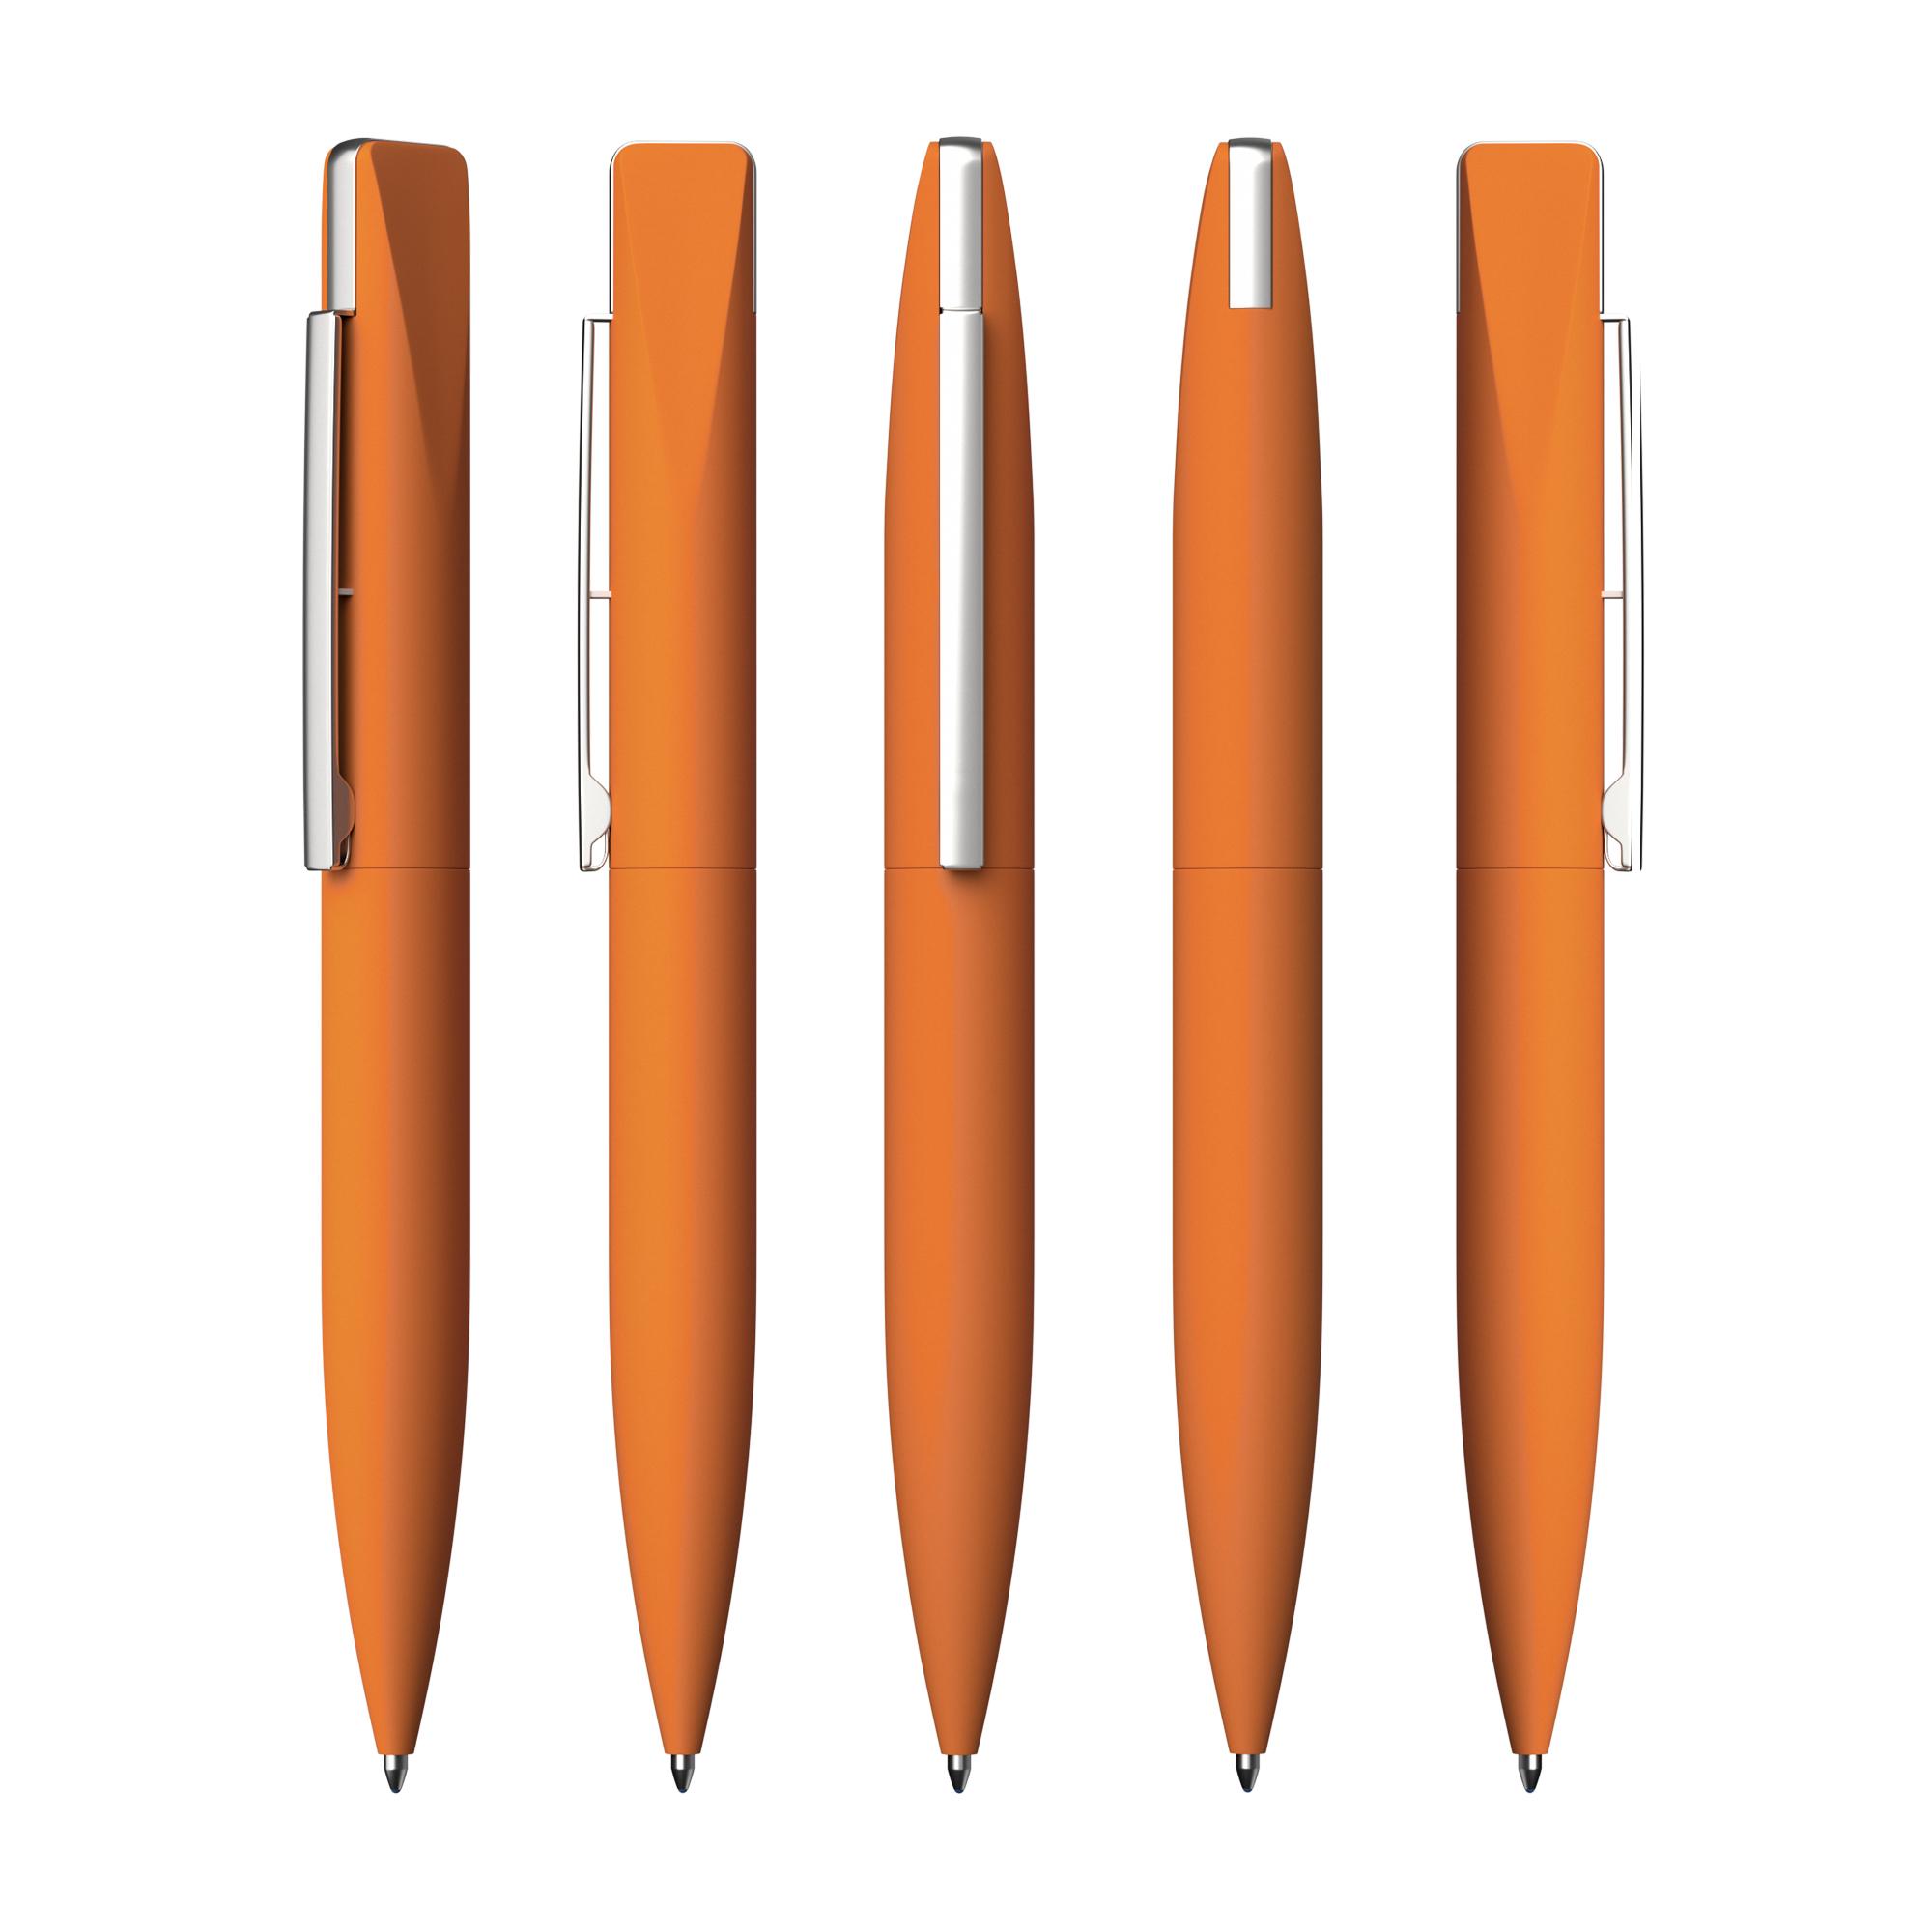 Ручка шариковая "Callisto" с флеш-картой 32Gb, покрытие soft touch, цвет оранжевый, фото 2